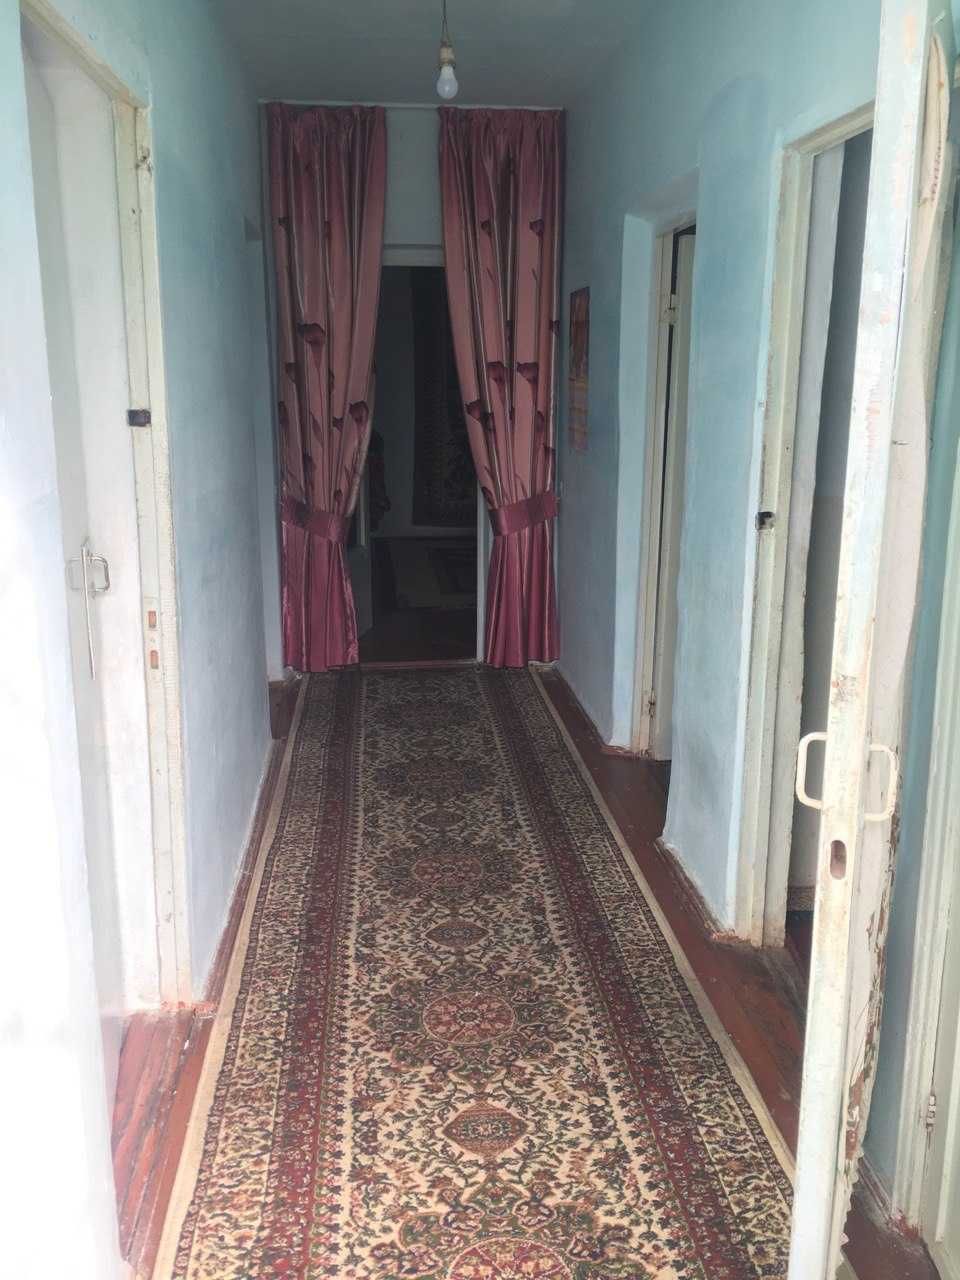 Продаётся дом в Янгиюльском районе срочно